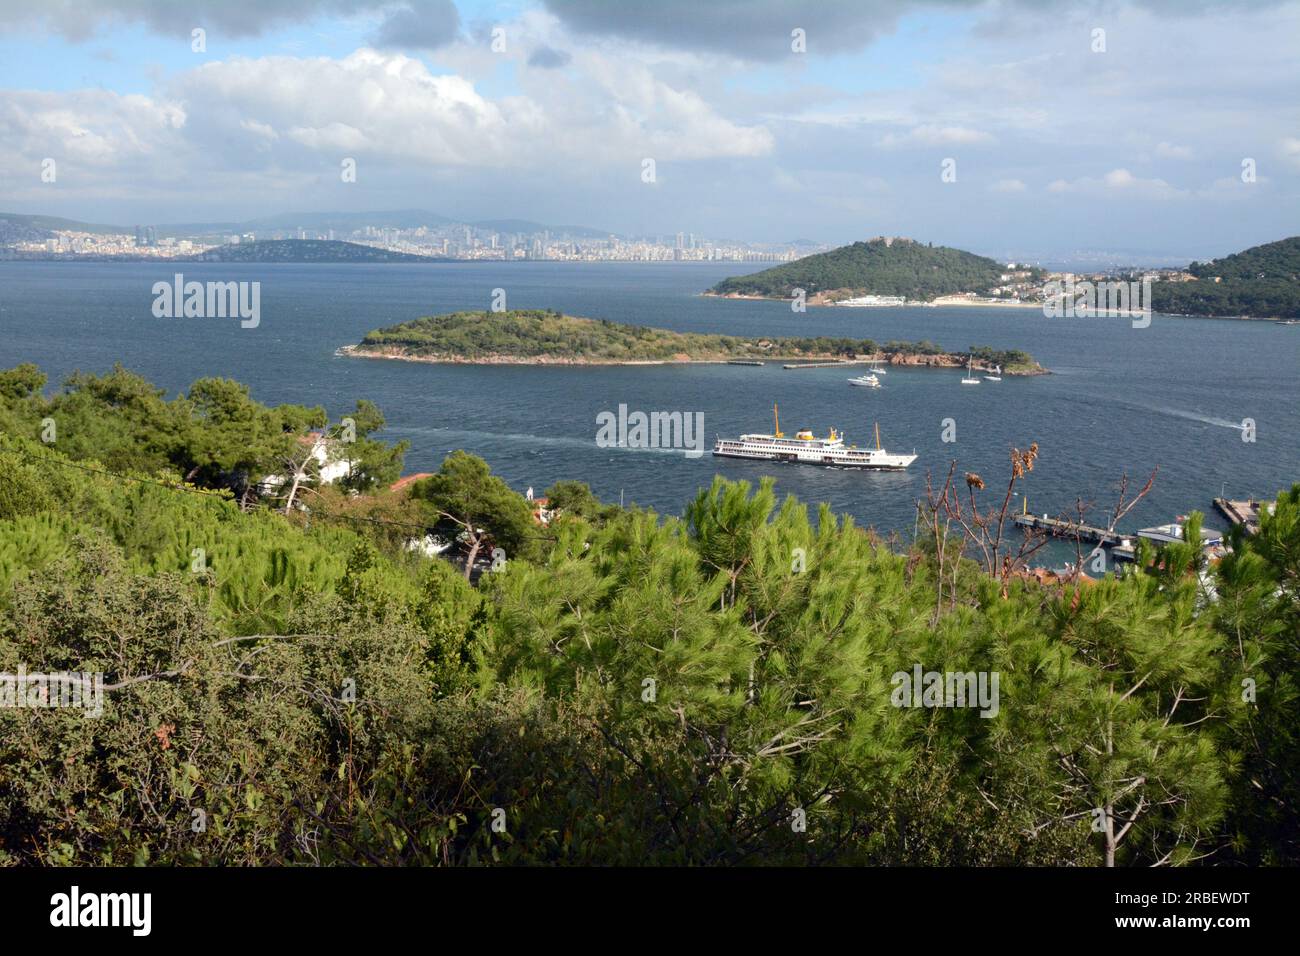 Il traghetto da Istanbul arriva all'isola di Burgazada, nella catena delle Isole dei principi (Adalar), nel Mare di Marmara, Turchia, Turkiye. Foto Stock